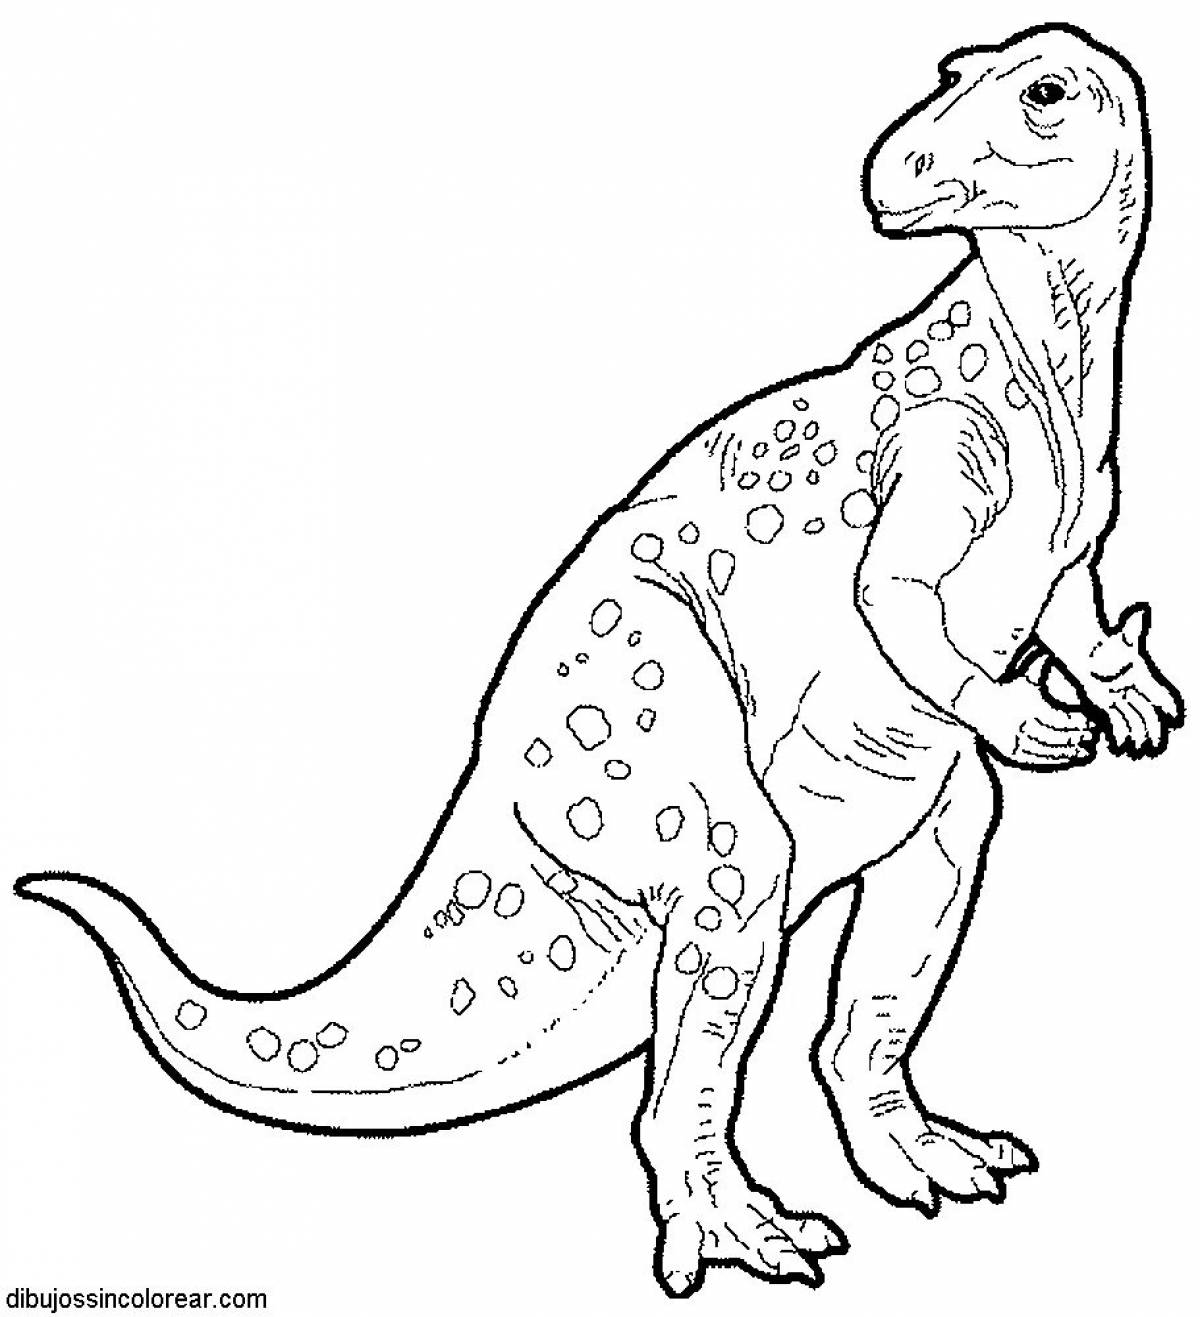 Iguanodon #2